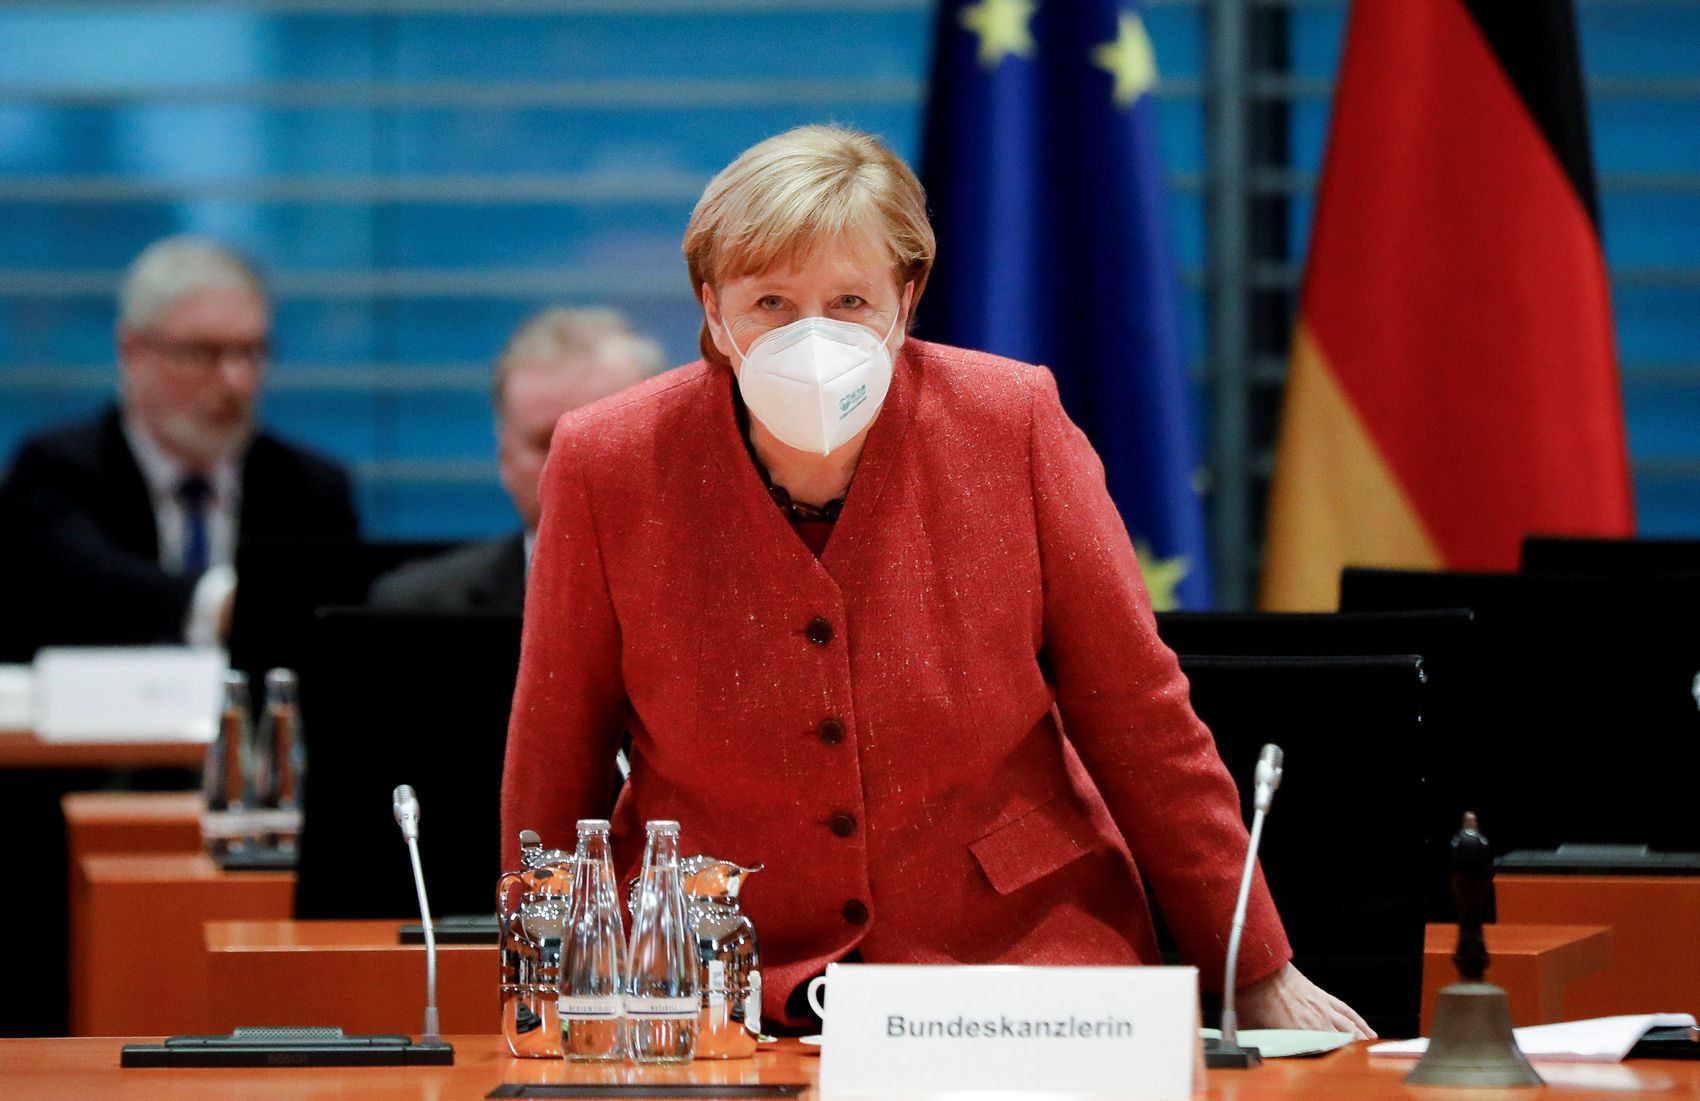 Меркель больше не самый популярный в ФРГ политик